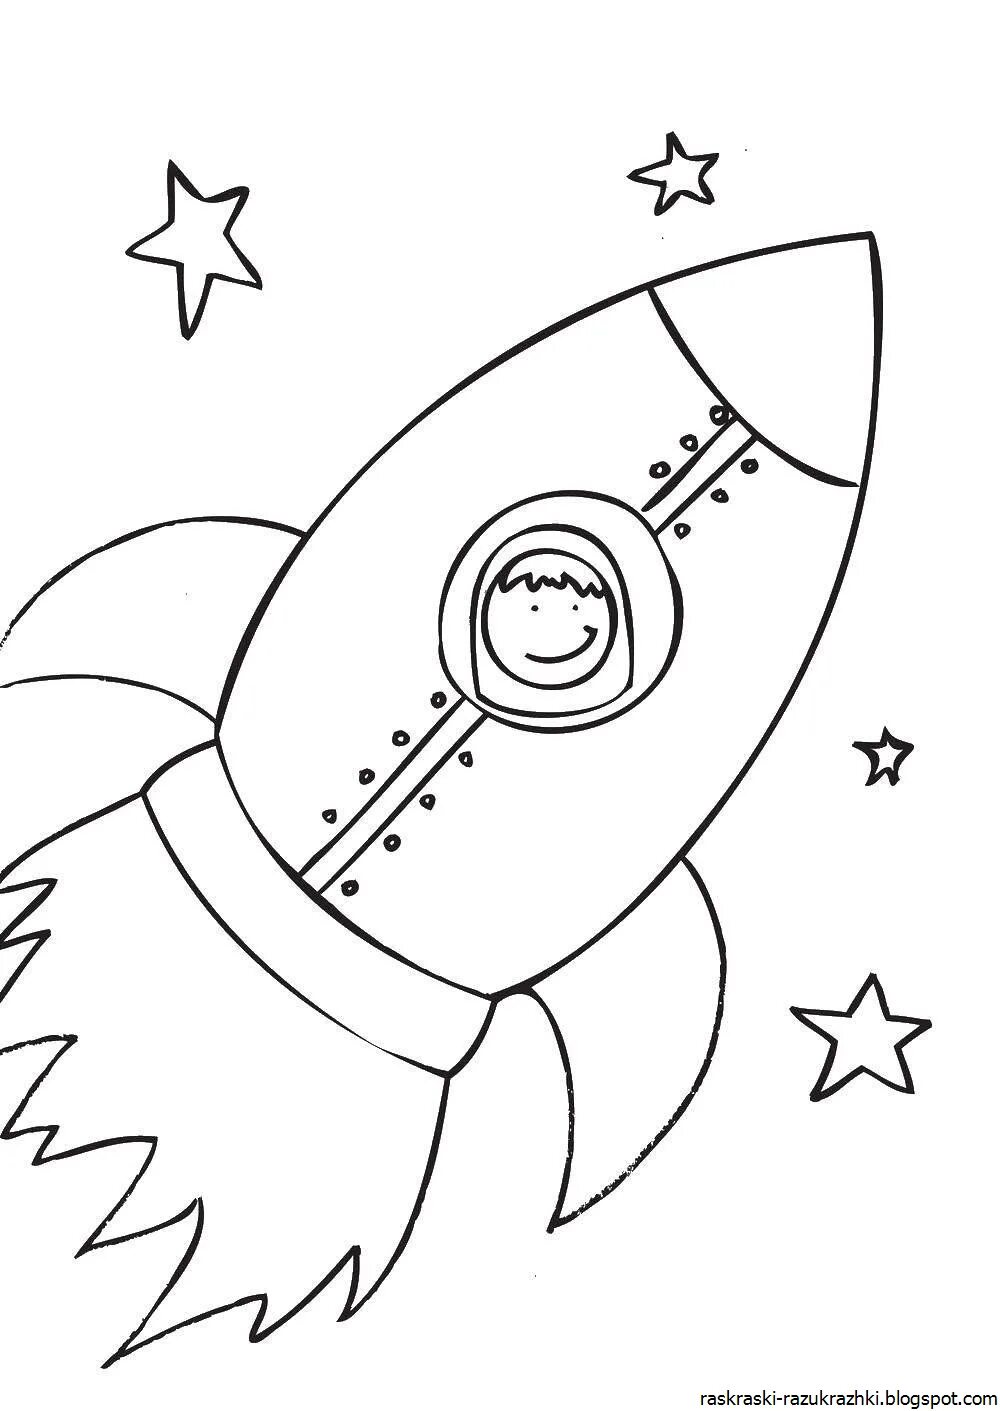 Раскраска ракета для детей 4 5 лет. Ракета раскраска. Раскраска для малышей. Космос. Космос раскраска для детей. Ракета раскраска для детей.